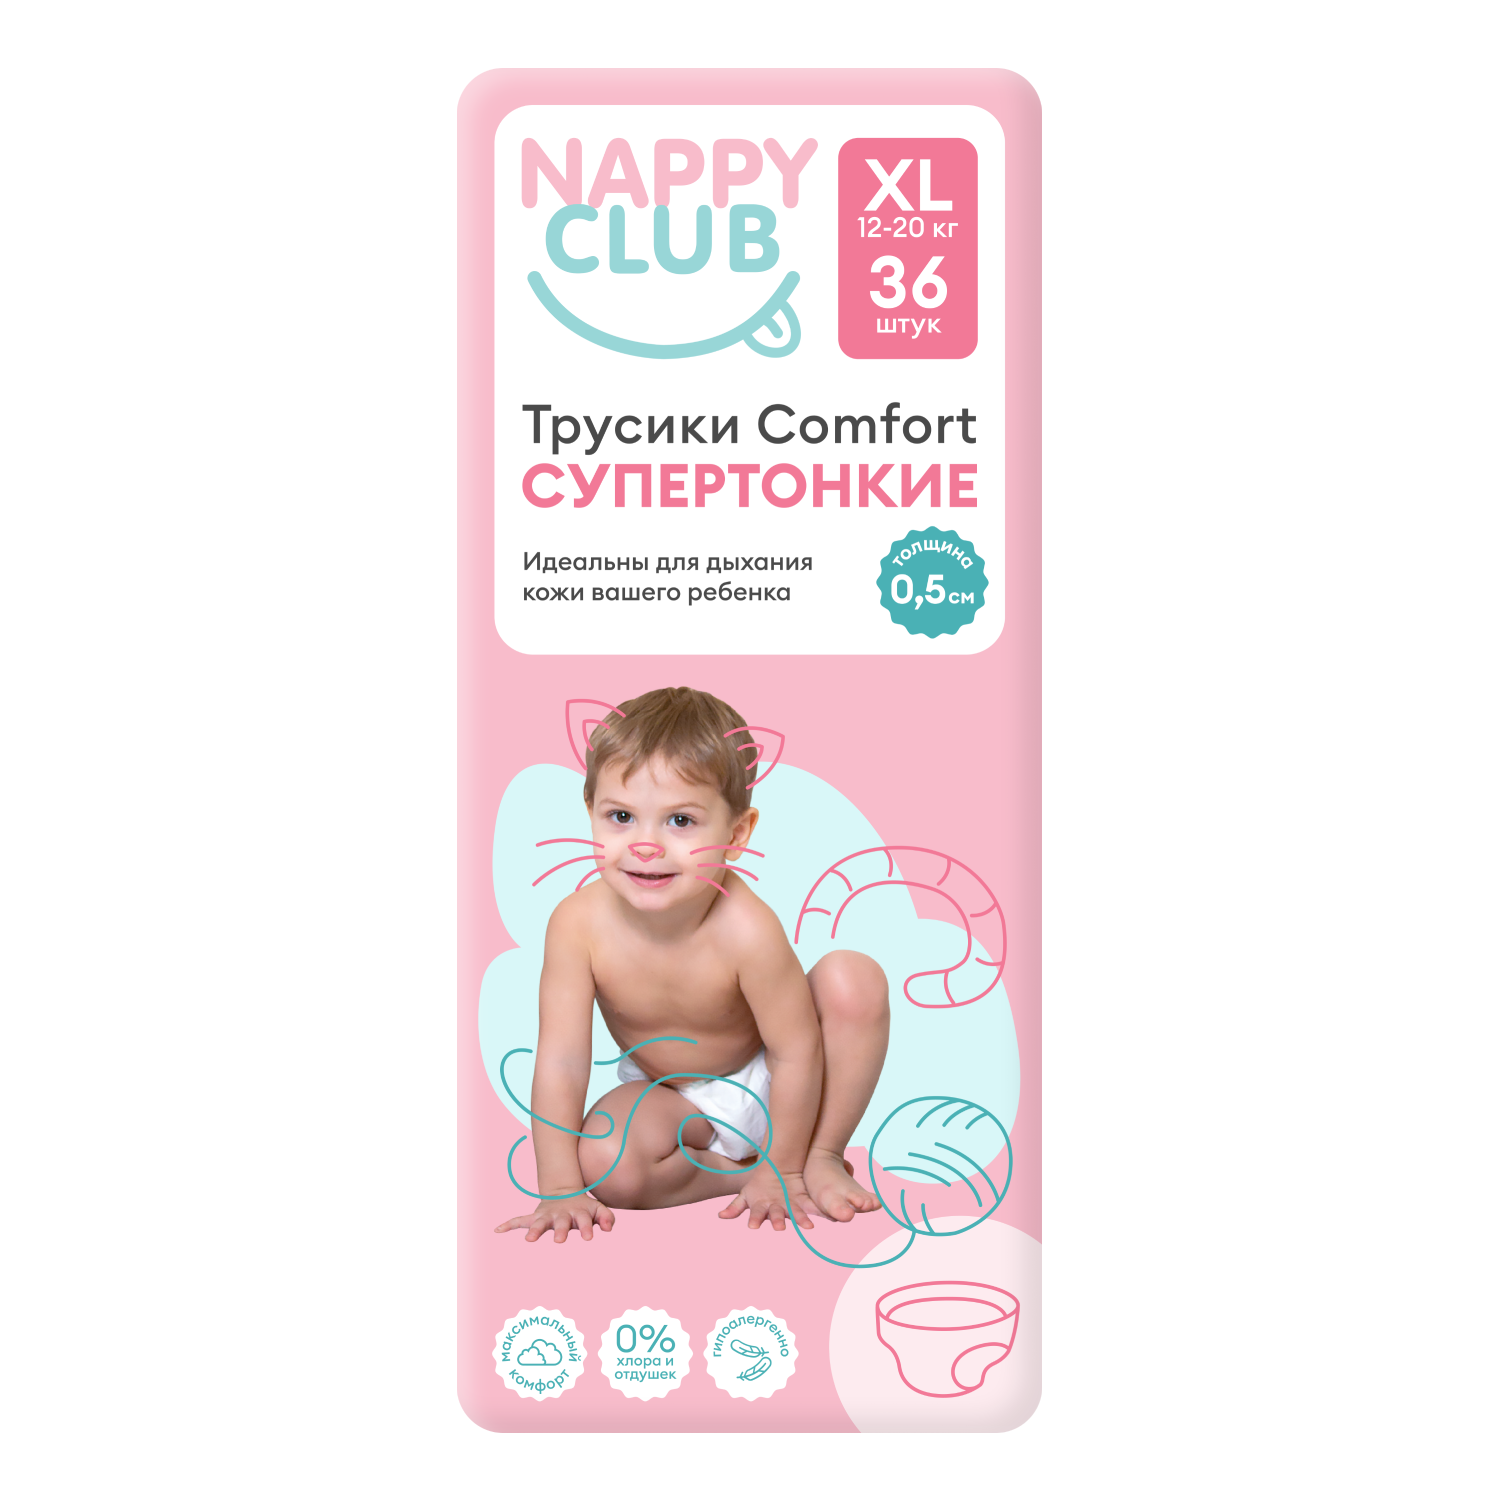 NappyClub трусики Comfort дневные супер-тонкие XL (12-20 кг) 36 шт. nappyclub трусики comfort xl 12 20 кг 38 шт